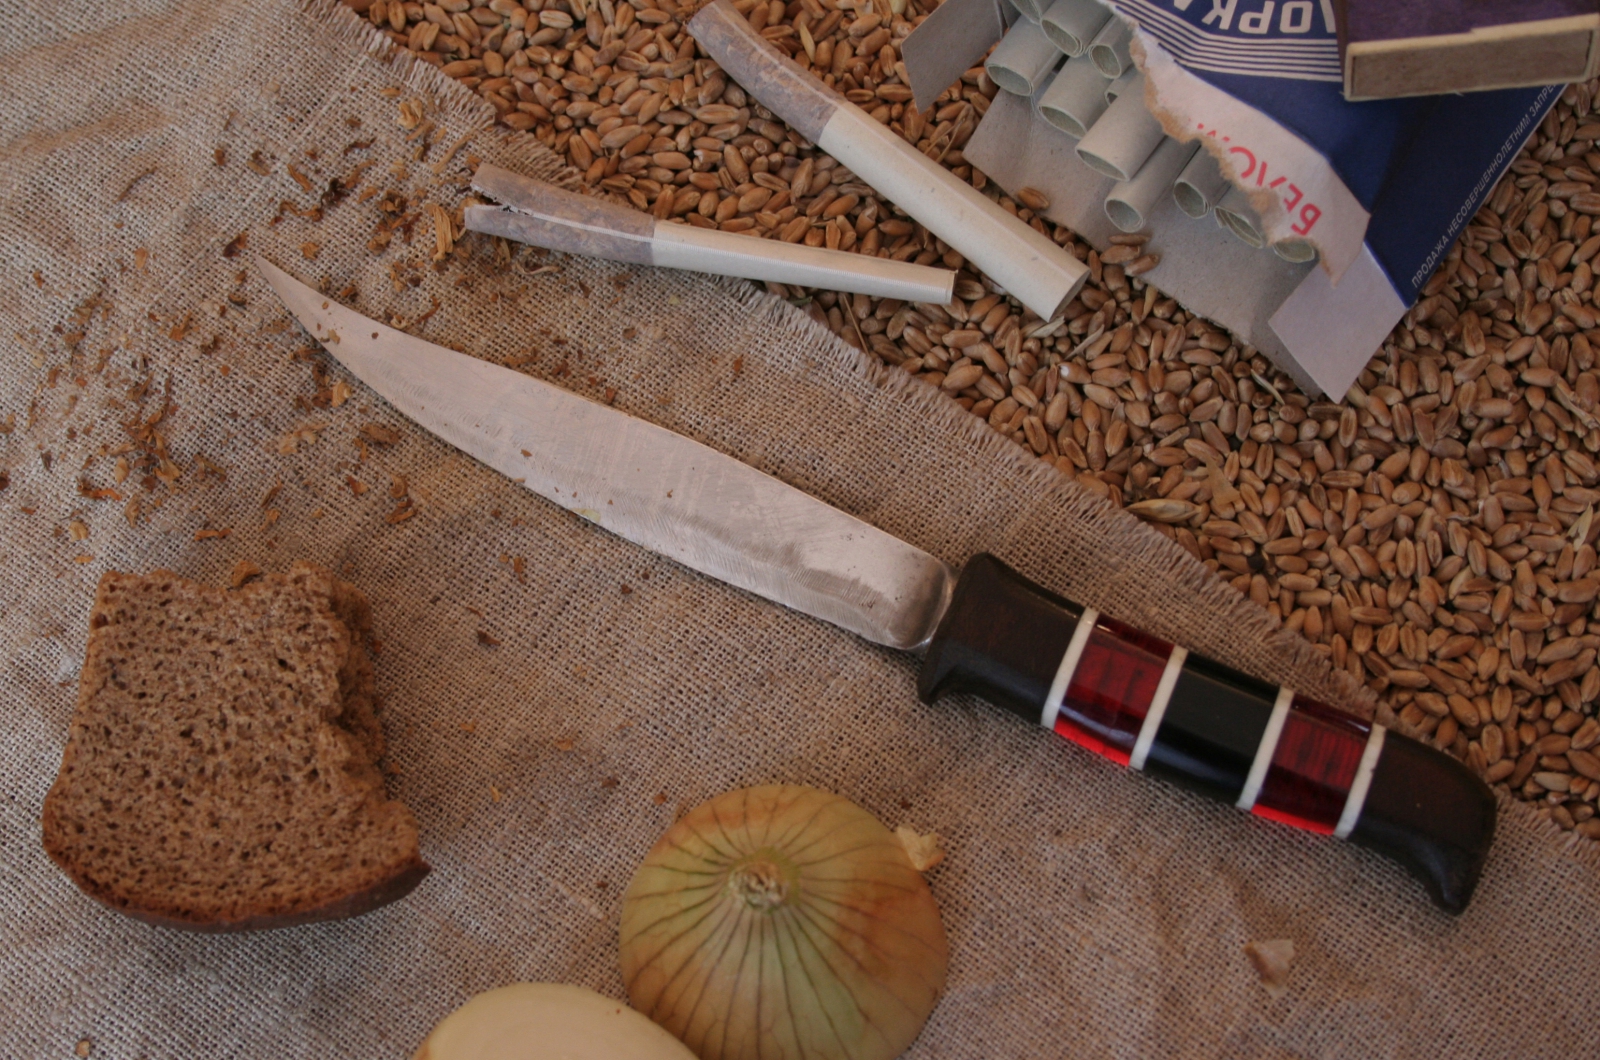 фото ножа с базара